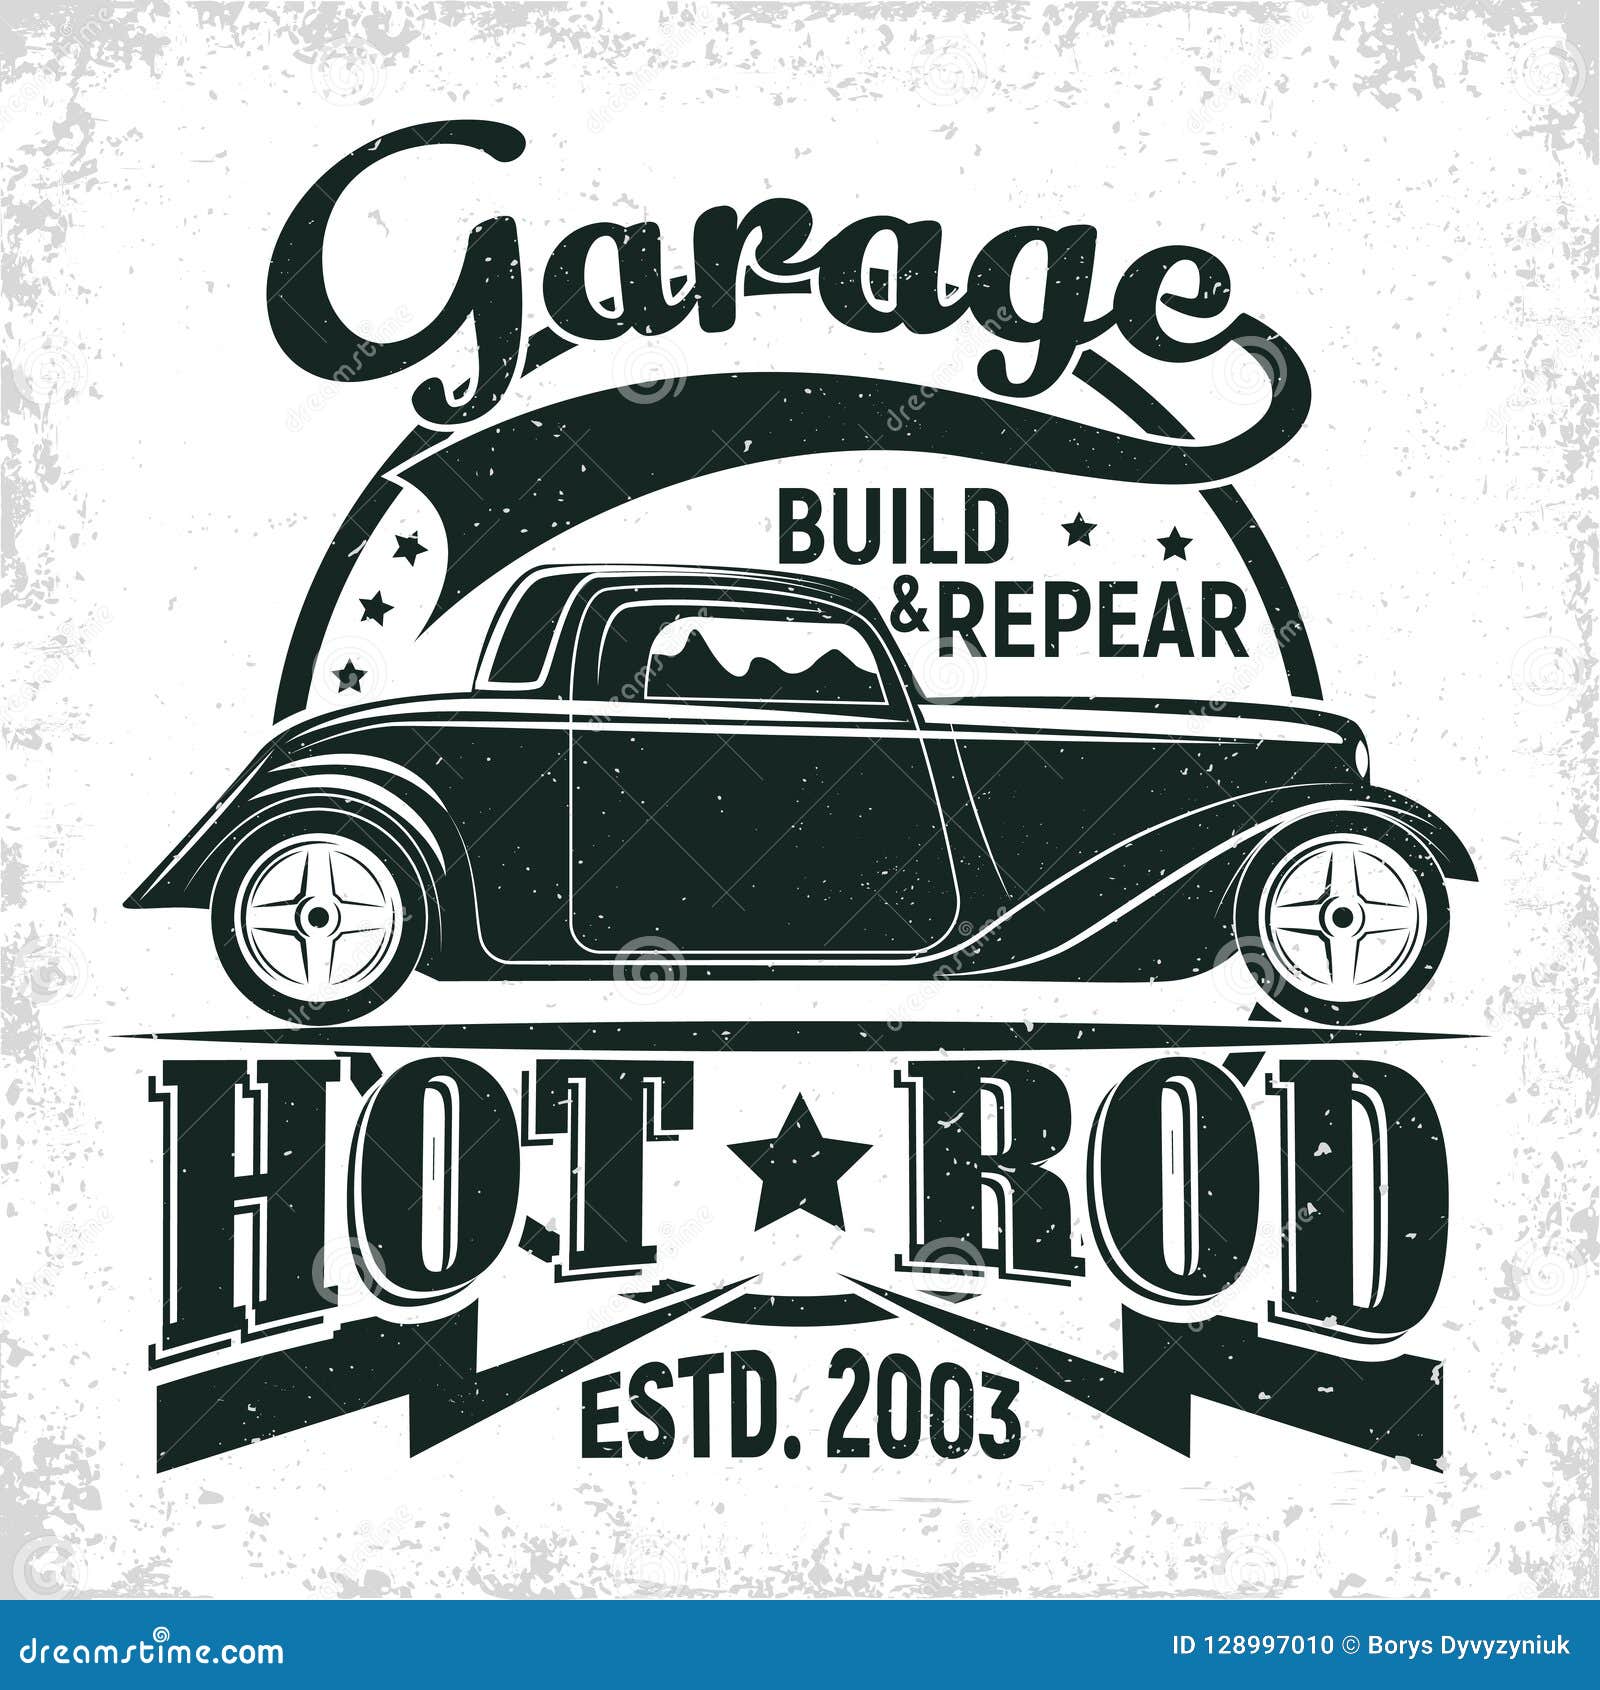 Vintage Hot Rod Emblem Design Stock Vector Illustration Of